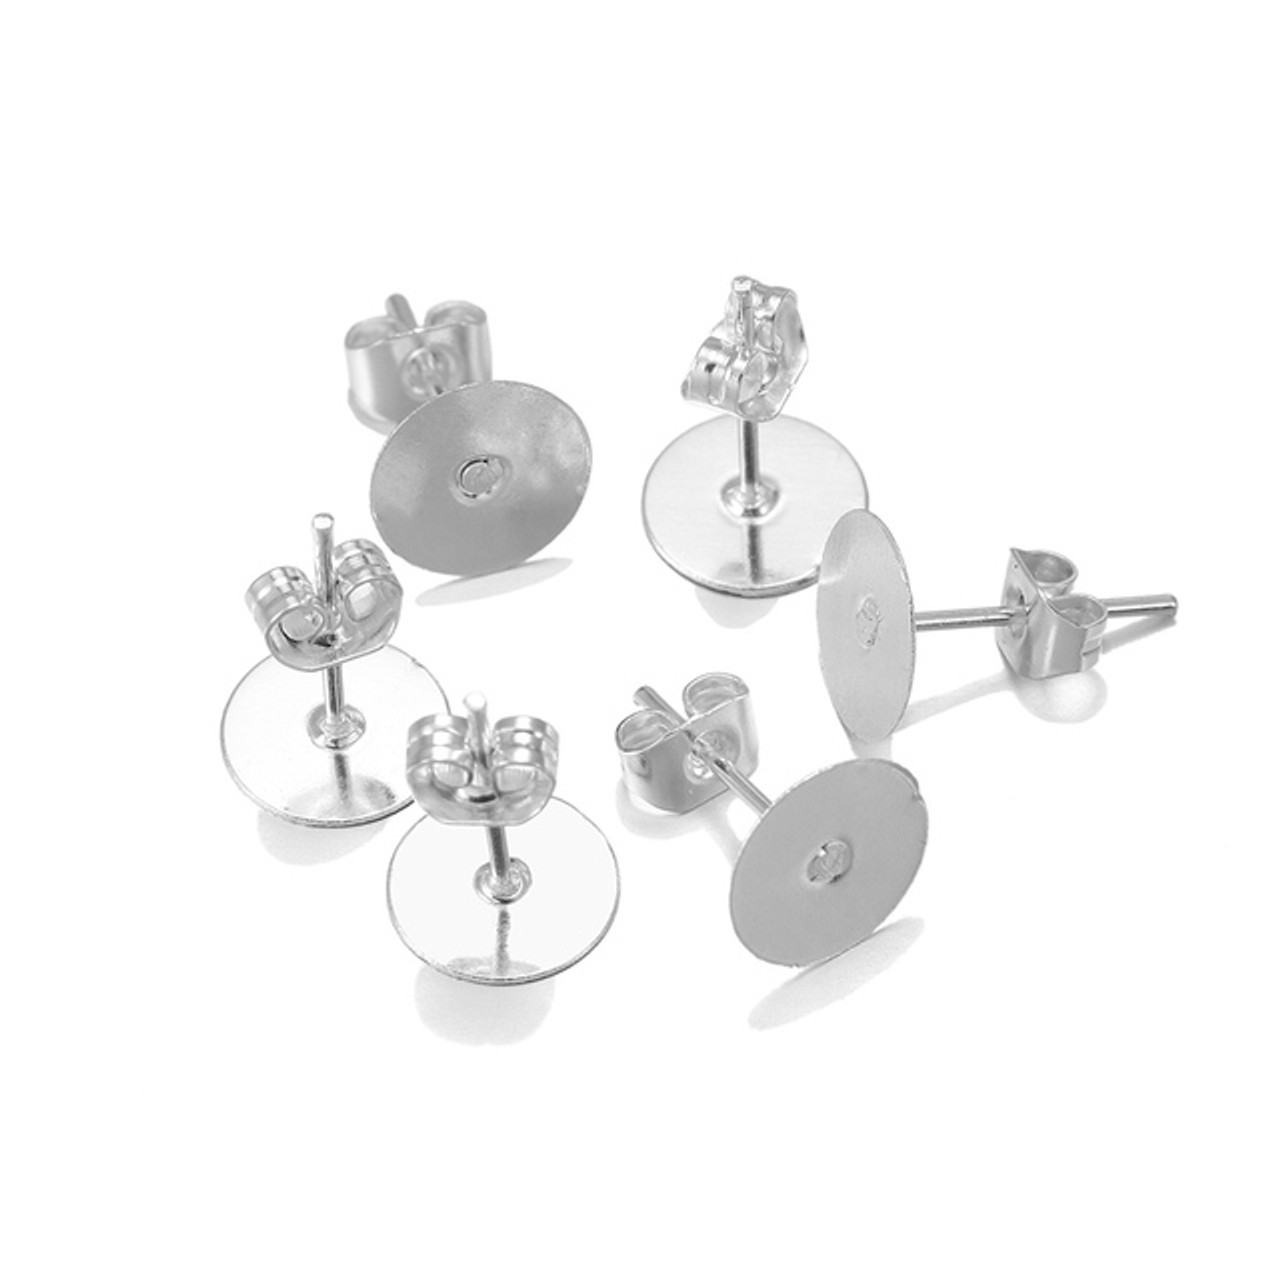 Earring Studs Jewelry Making  Ball Head Pin Earring Findings - 3